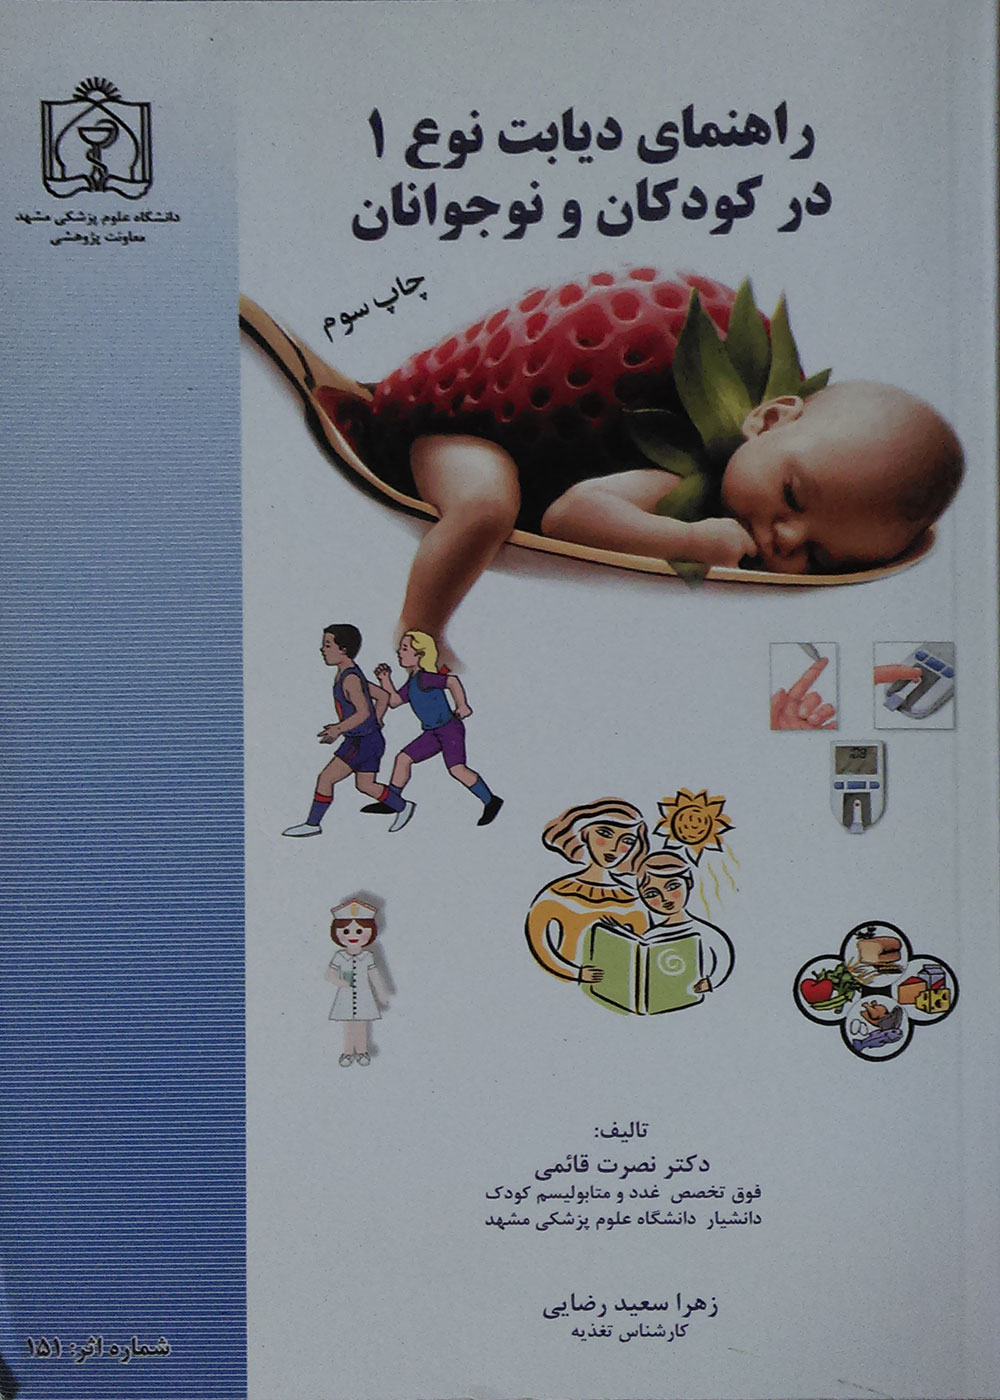 کتاب راهنمای دیابت نوع 1 در کودکان و نوجوانان